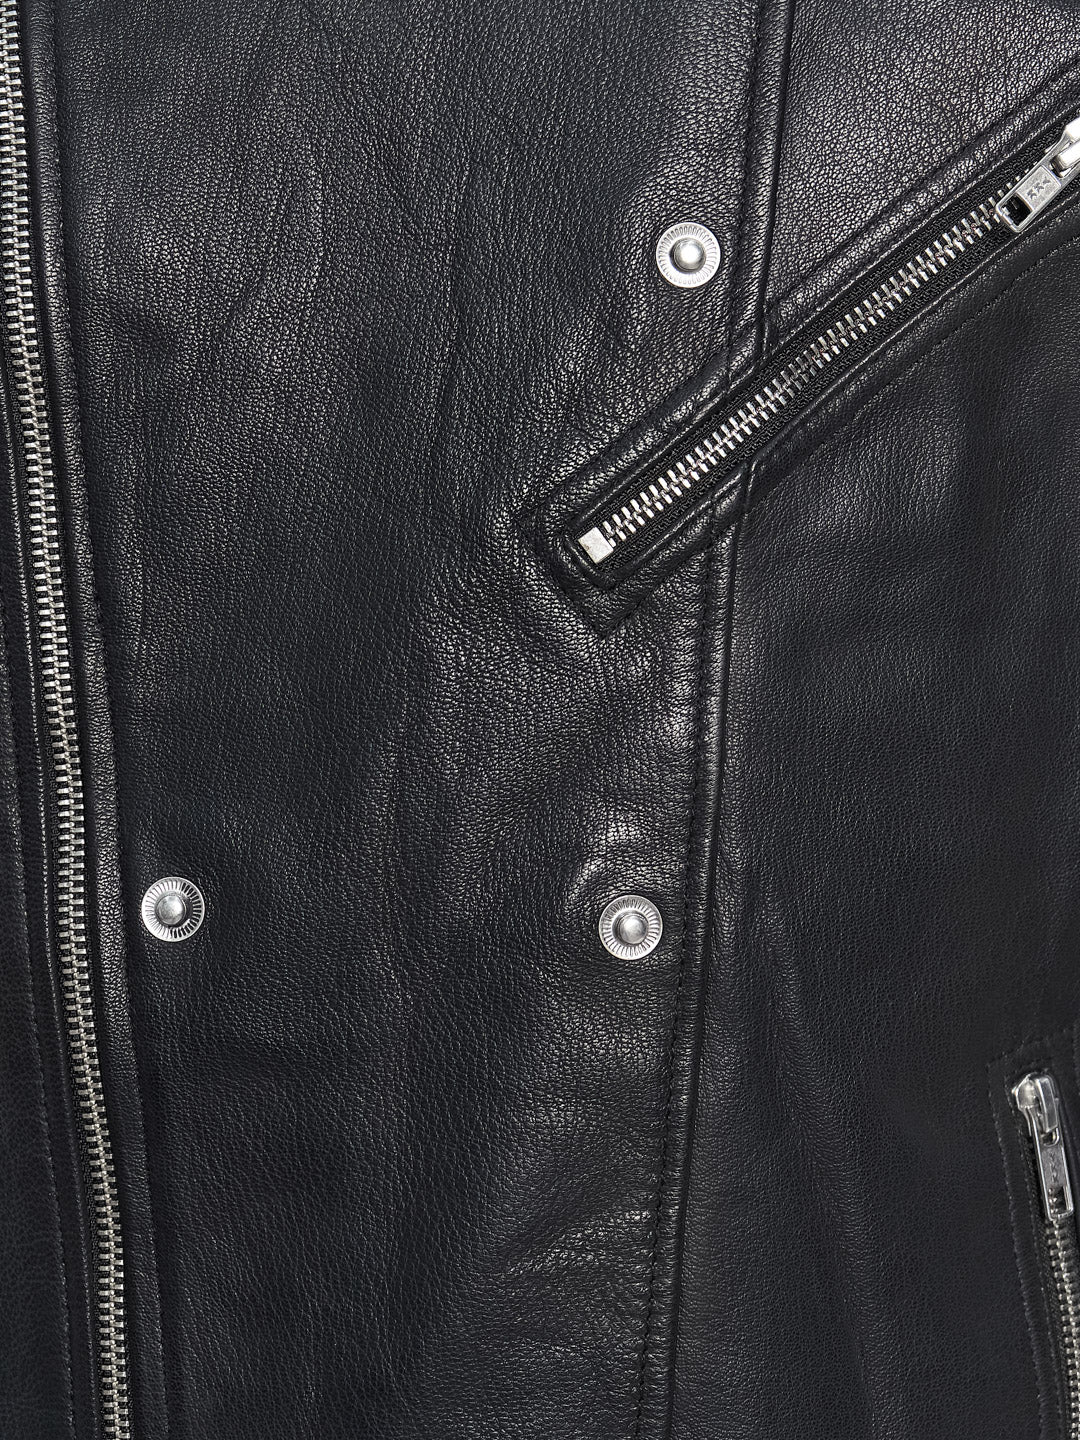 Vintage Washed Leather Biker Jacket